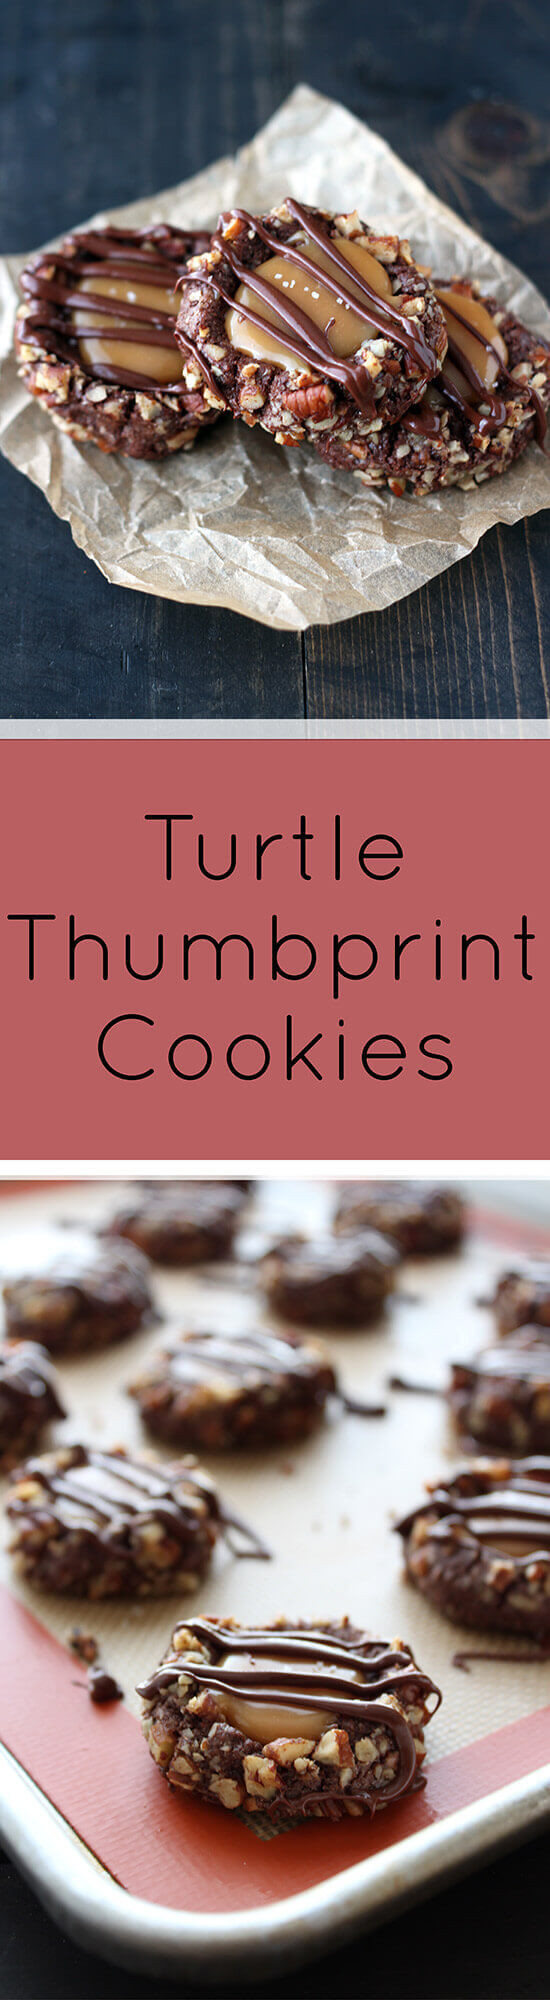 Turtle Thumbprint Cookies
 Turtle Thumbprint Cookies